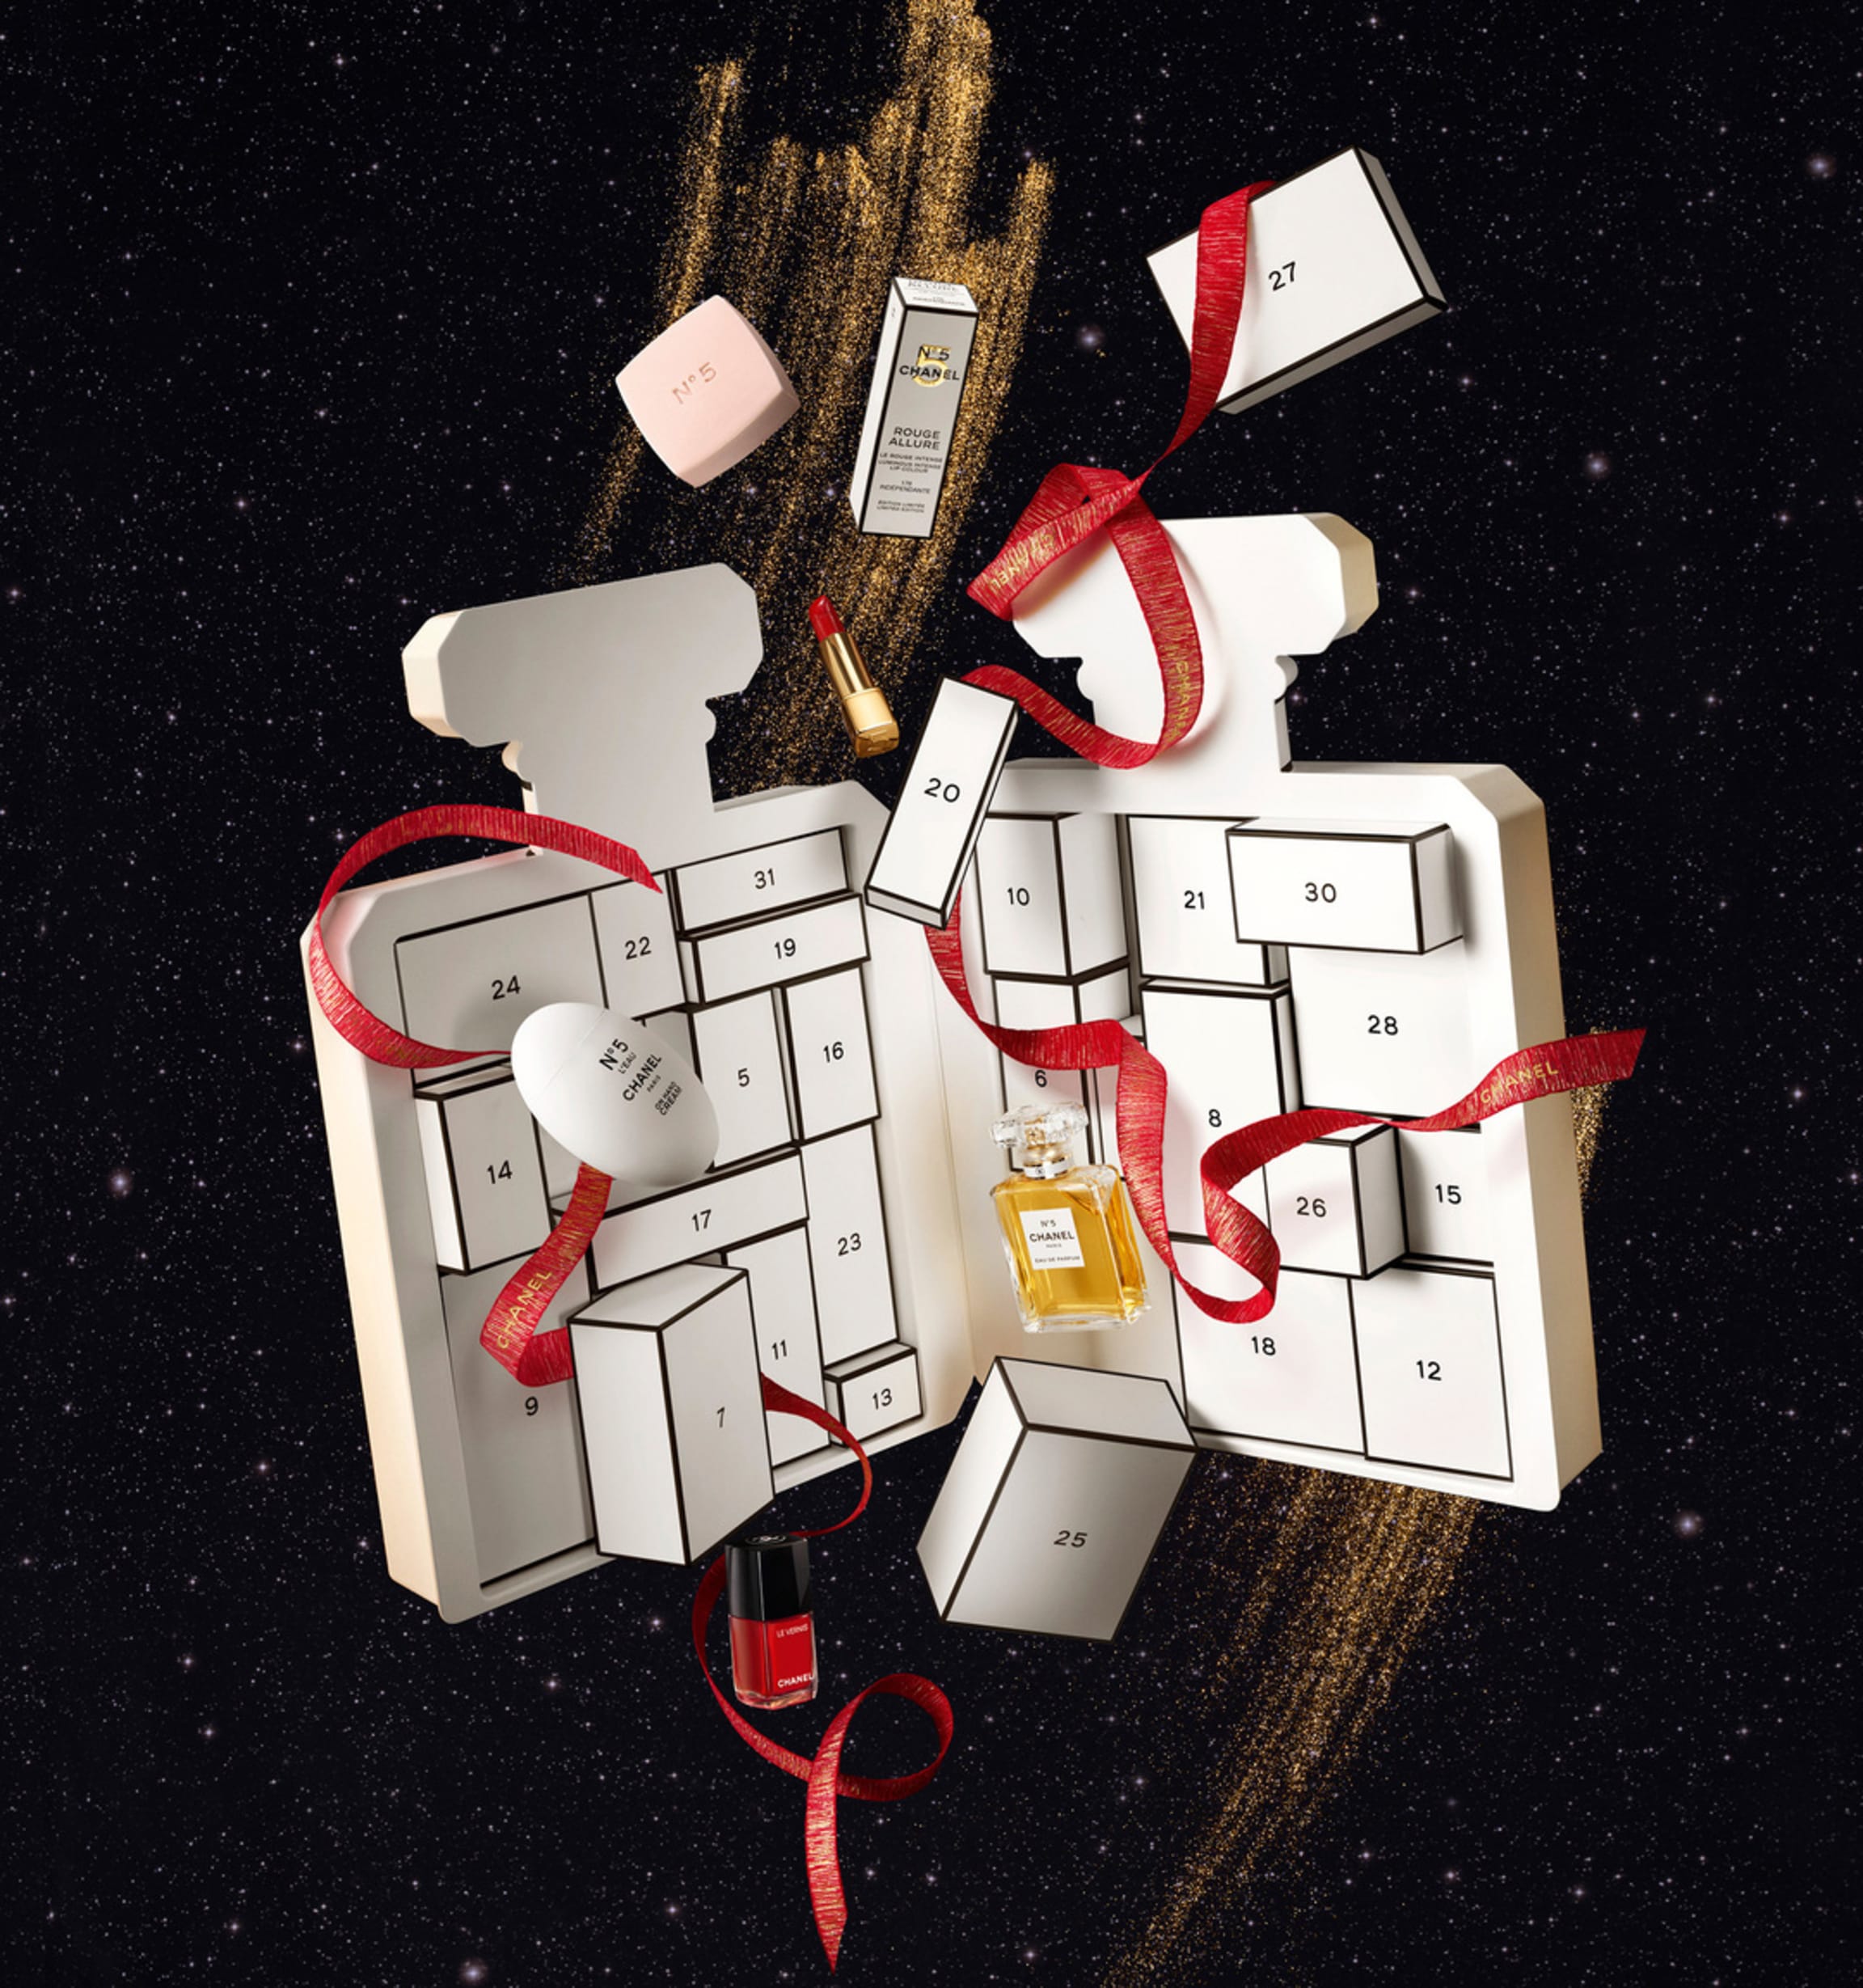 售价五千元的 Chanel 圣诞礼盒引发争议，公司总裁出面澄清